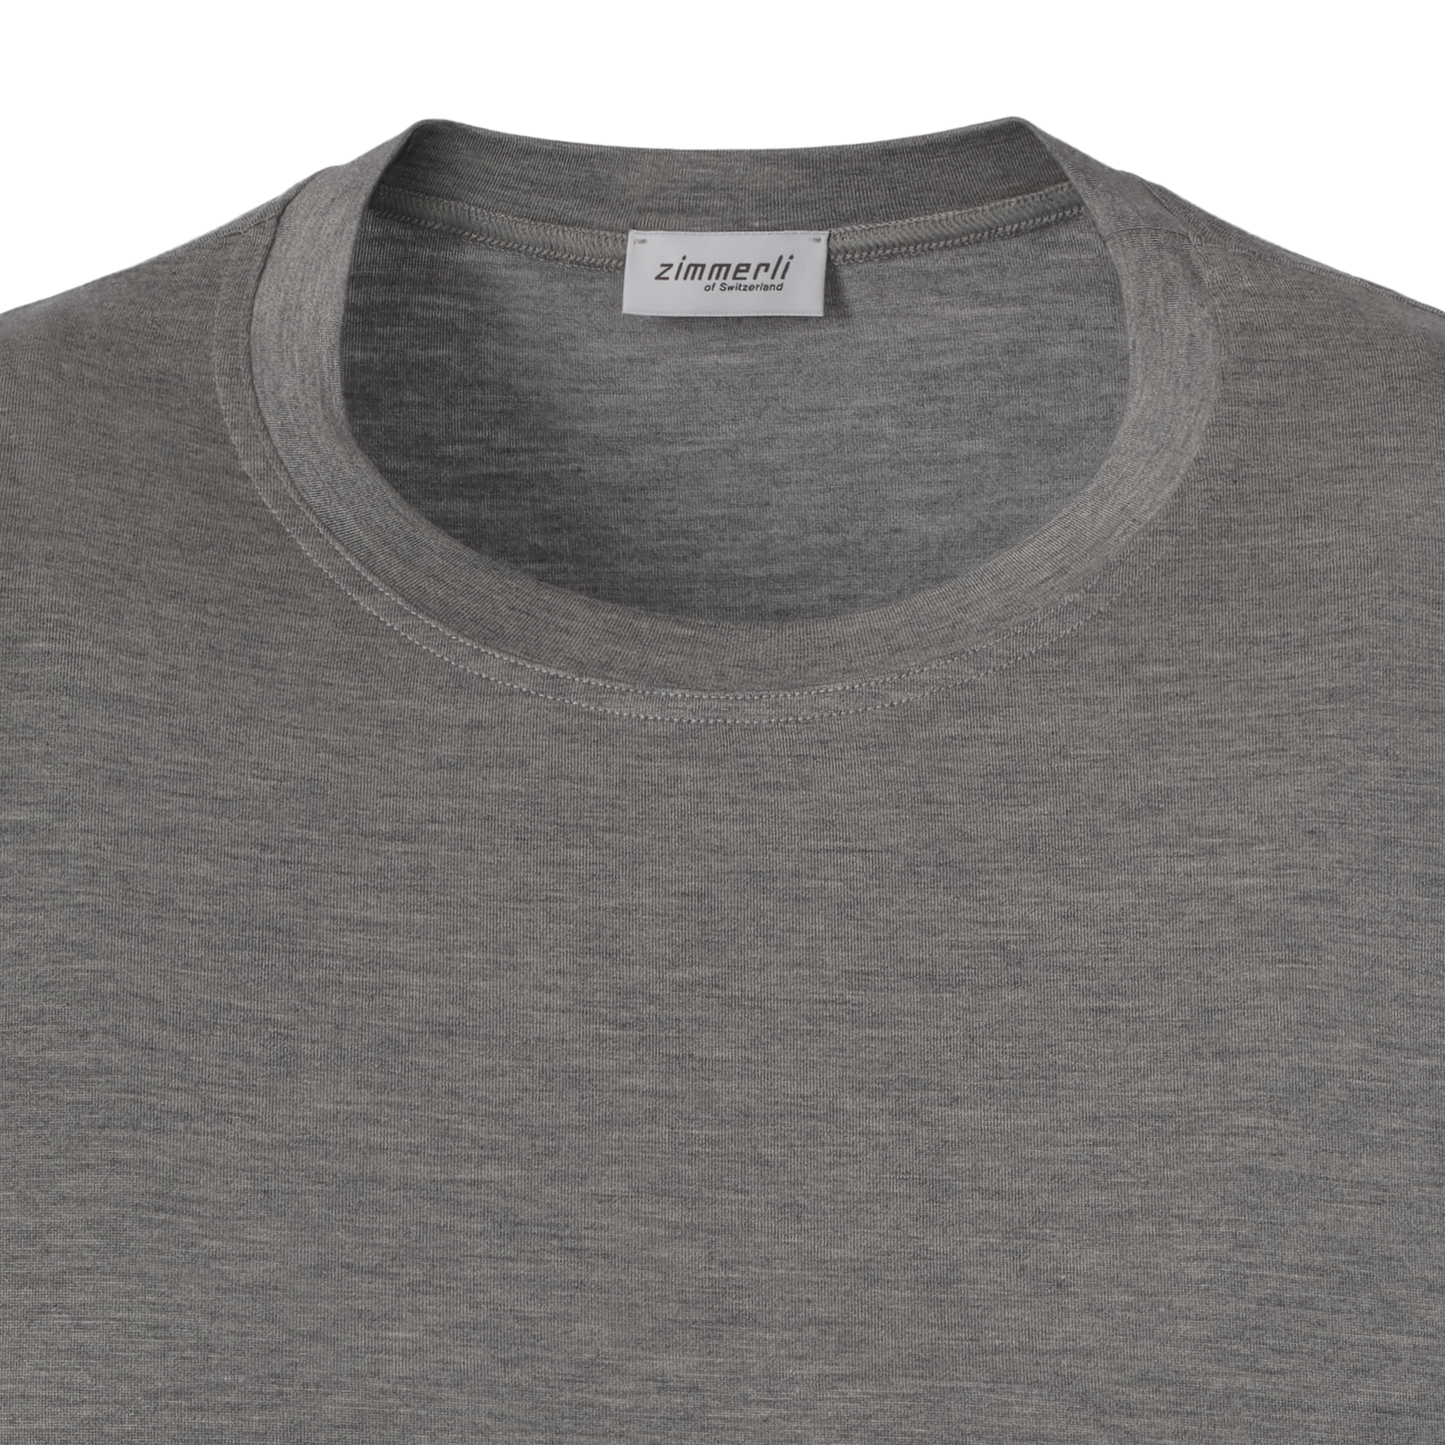 Crew-Neck T-Shirt in Grey Melange